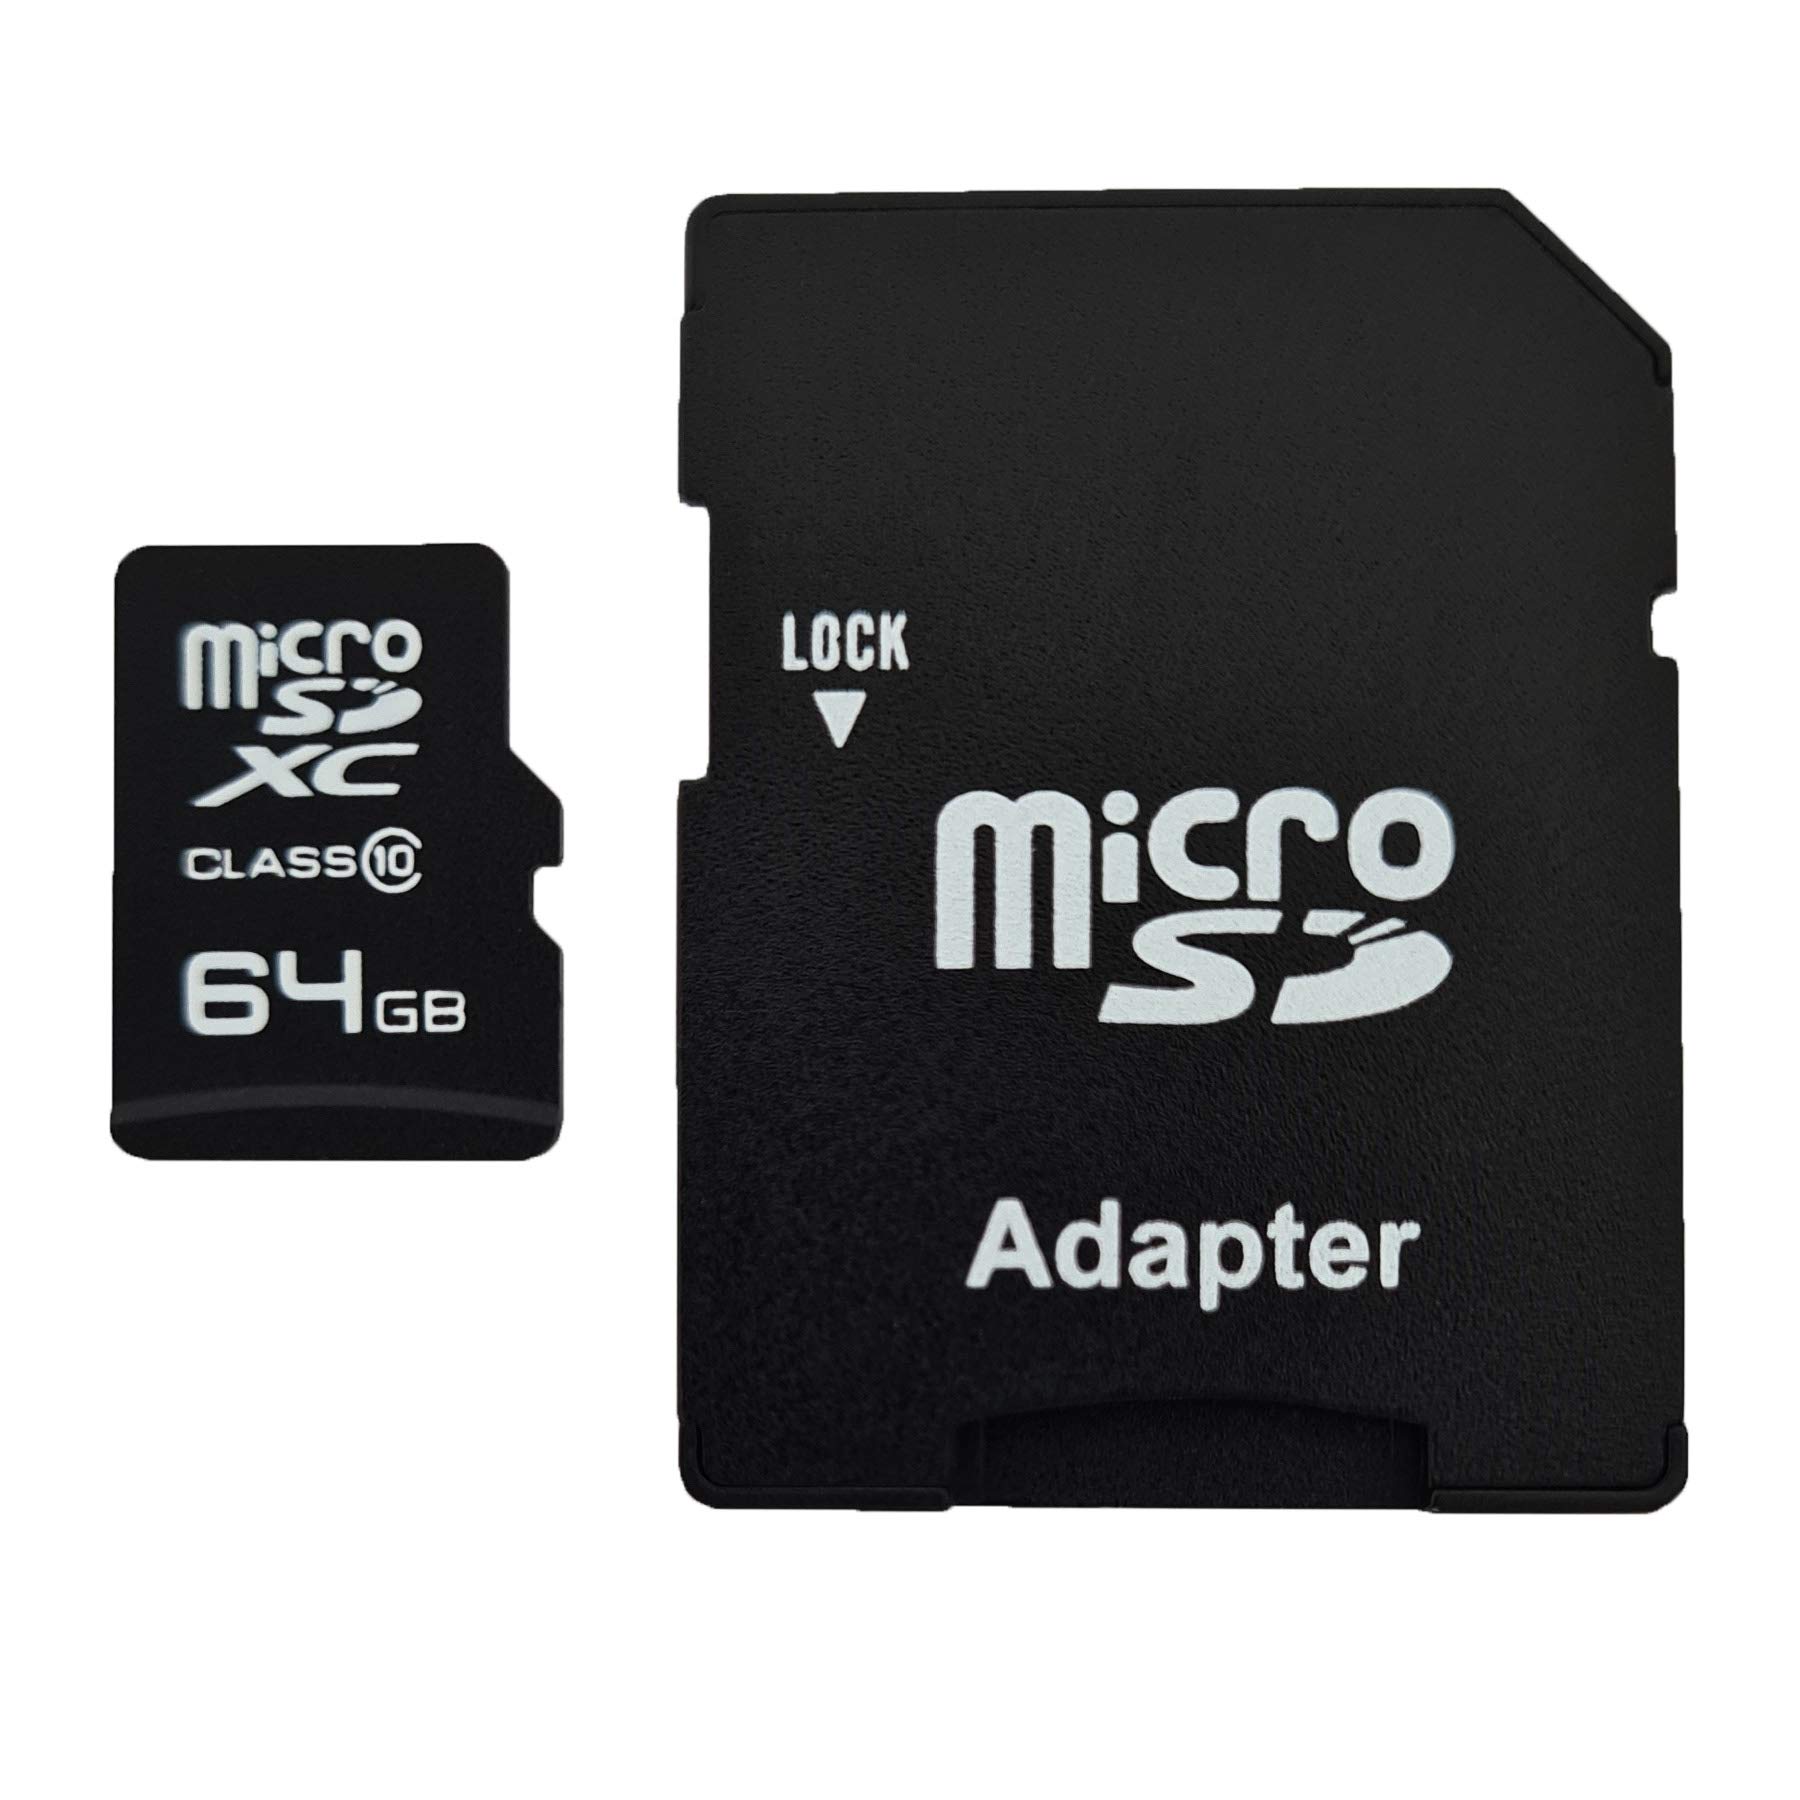 dekoelektropunktde 64GB MicroSDXC Speicherkarte mit Adapter Class 10 kompatibel für Samsung L210 WB150F PL100 ST65